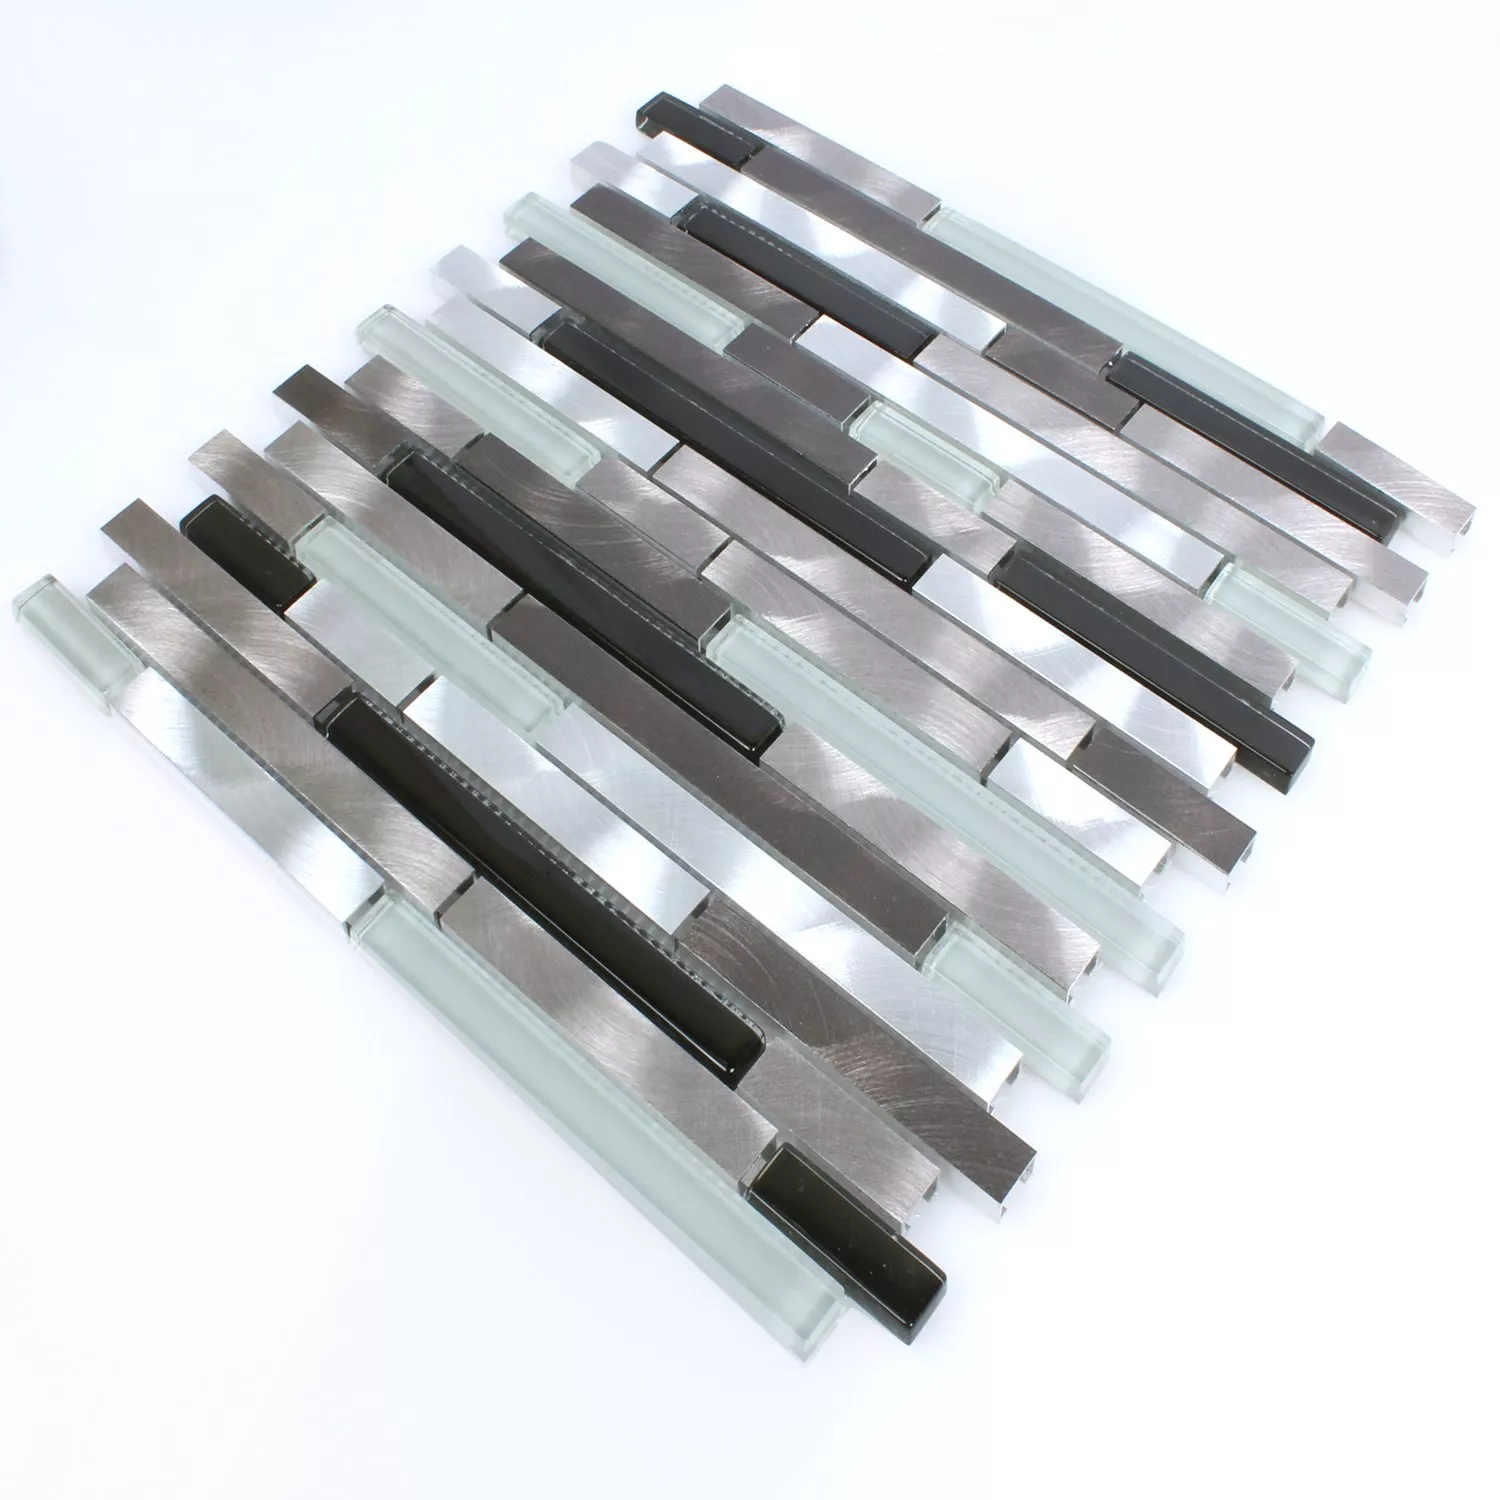 Muster von Mosaikfliesen Aluminium Glas Braun Schwarz Weiss Silber